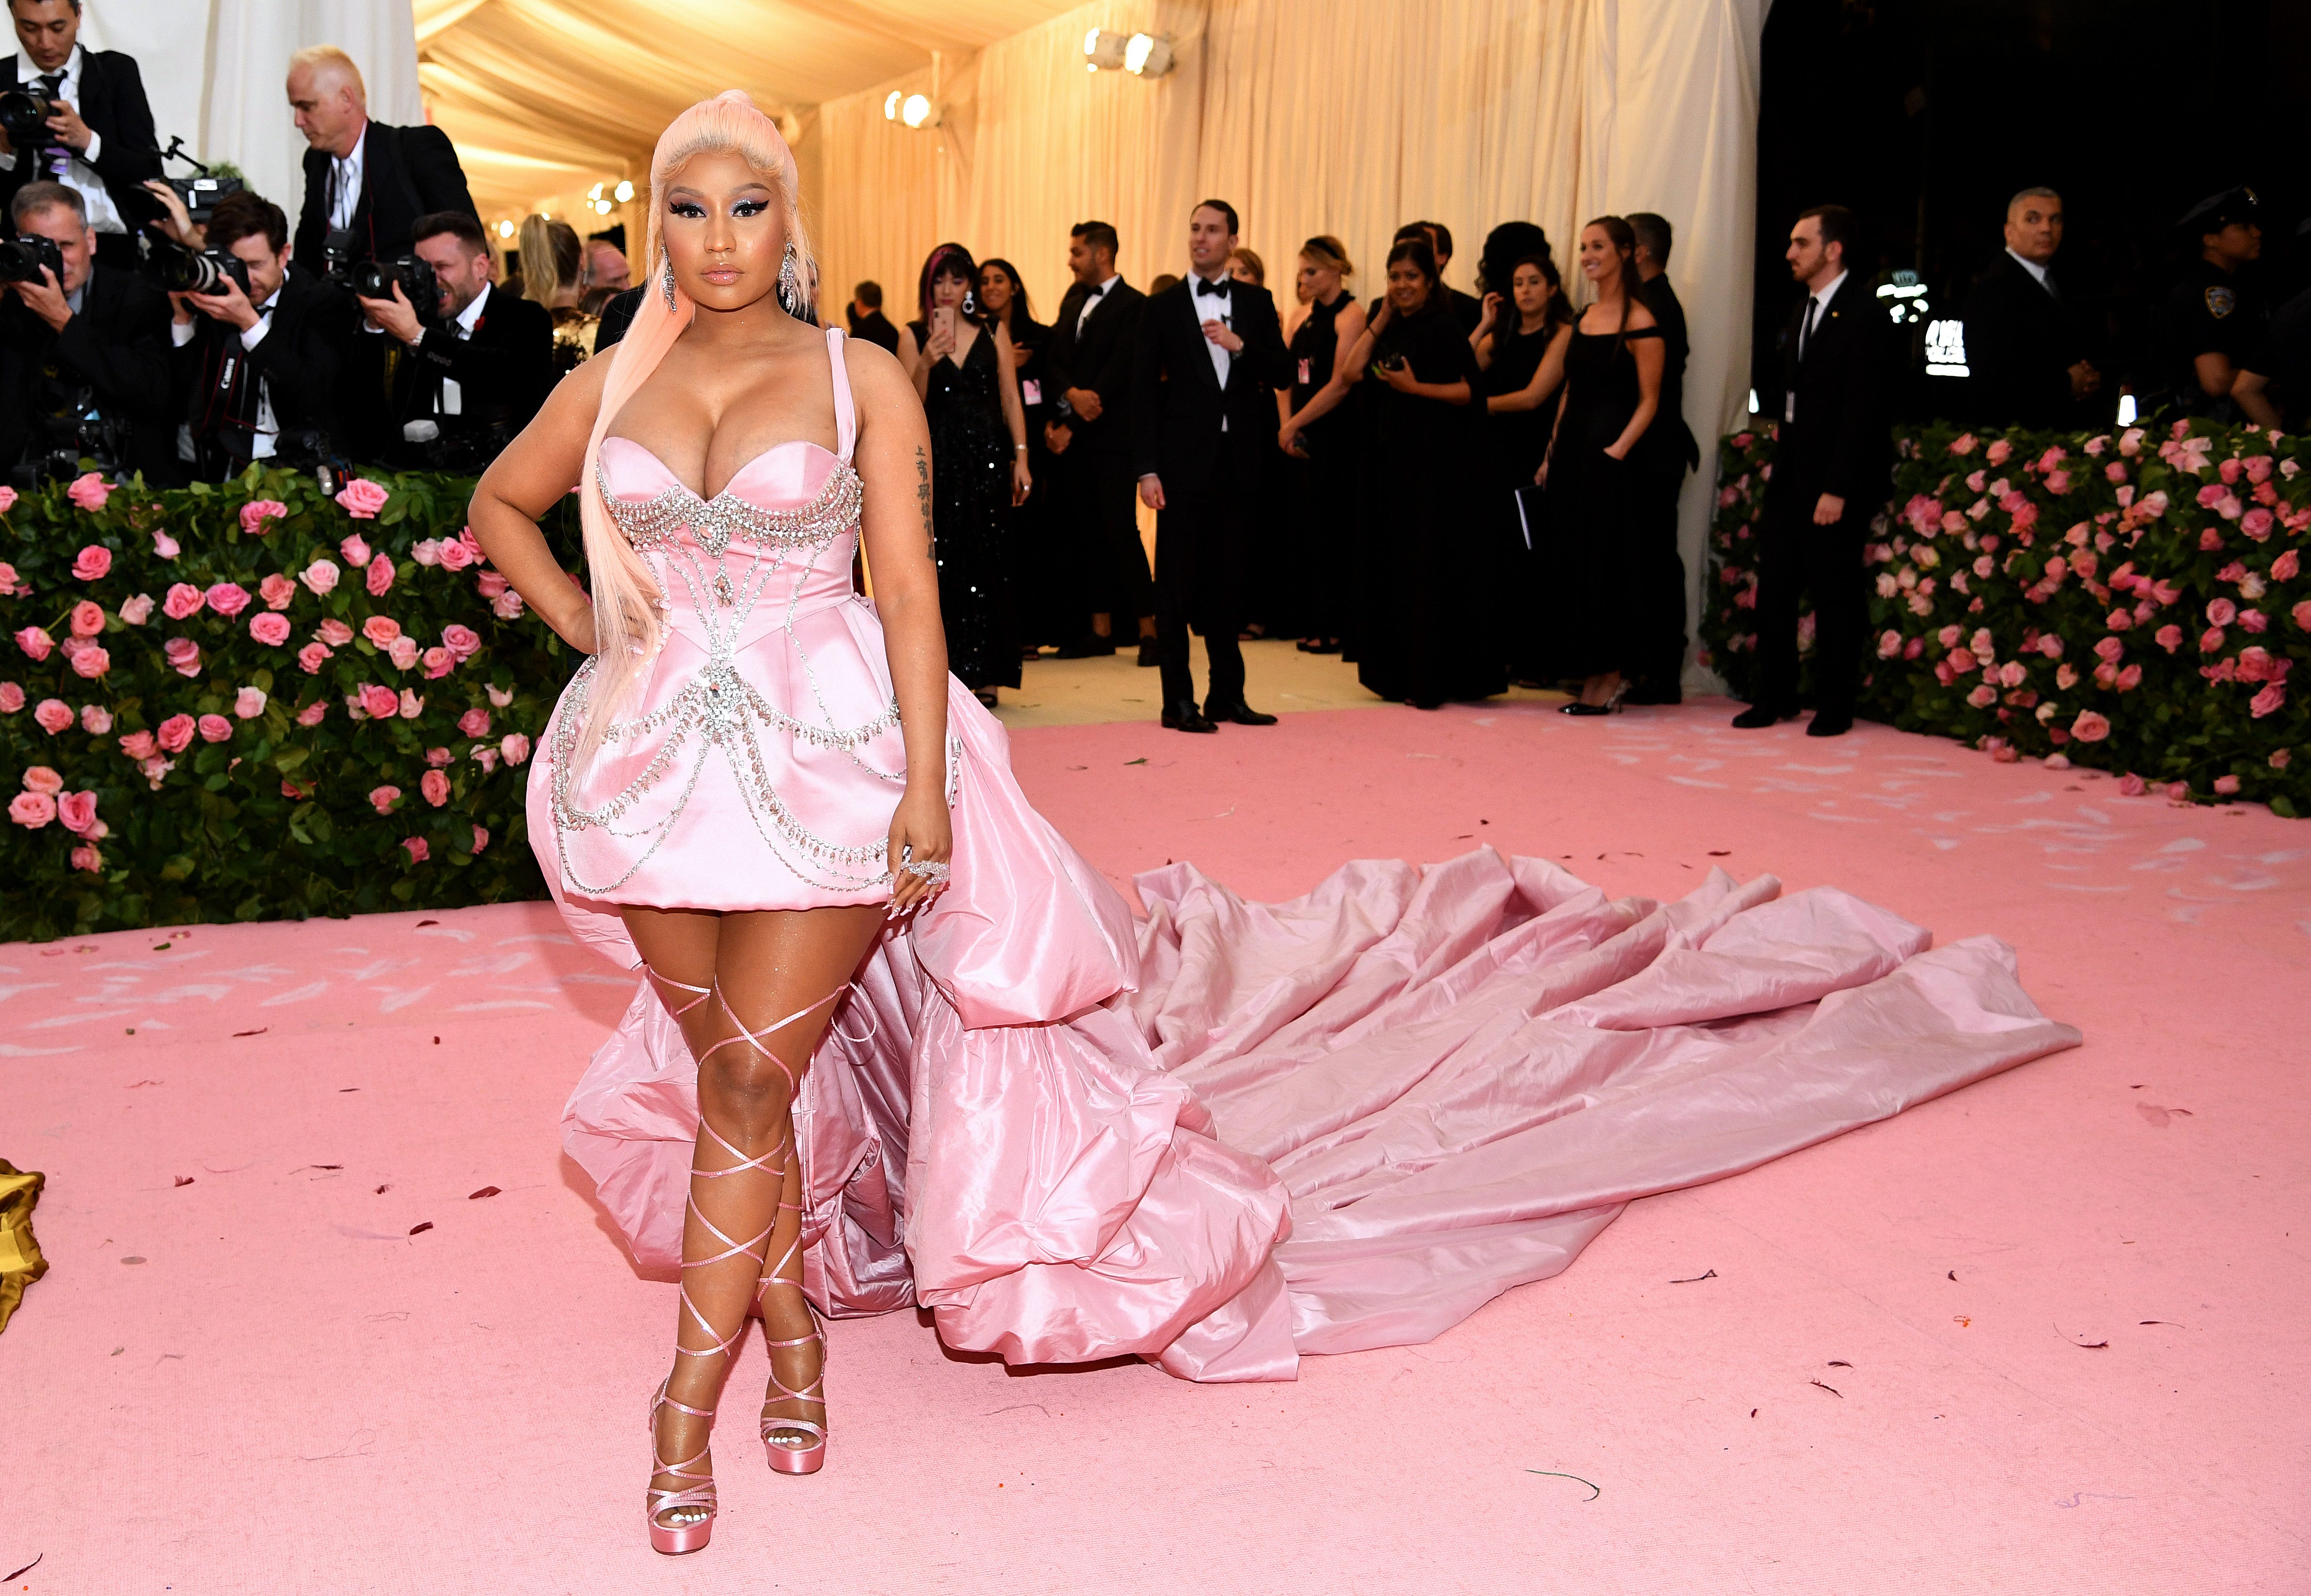 Nicki Minaj works the runway in an elegant pink train at the 2019 Met Gala 